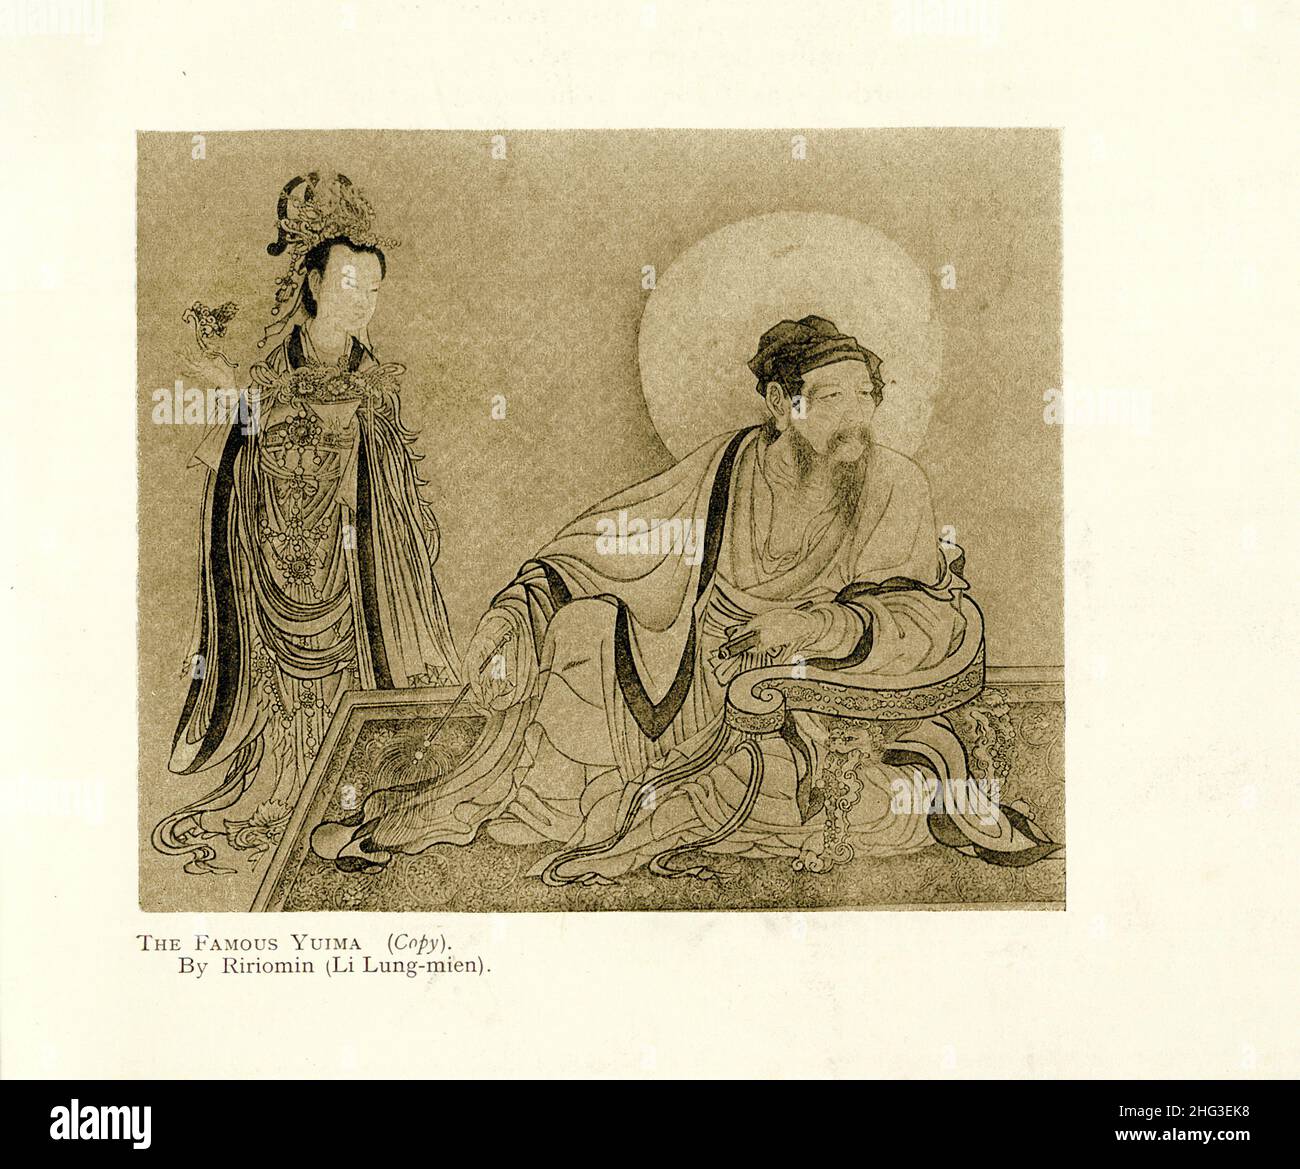 Chinesische mittelalterliche Malerei: Die berühmte Yuima (Kopie). Von Ririomin (Li Lung-mien (1100-1106)). Reproduktion der Buchdarstellung von 1912 Stockfoto